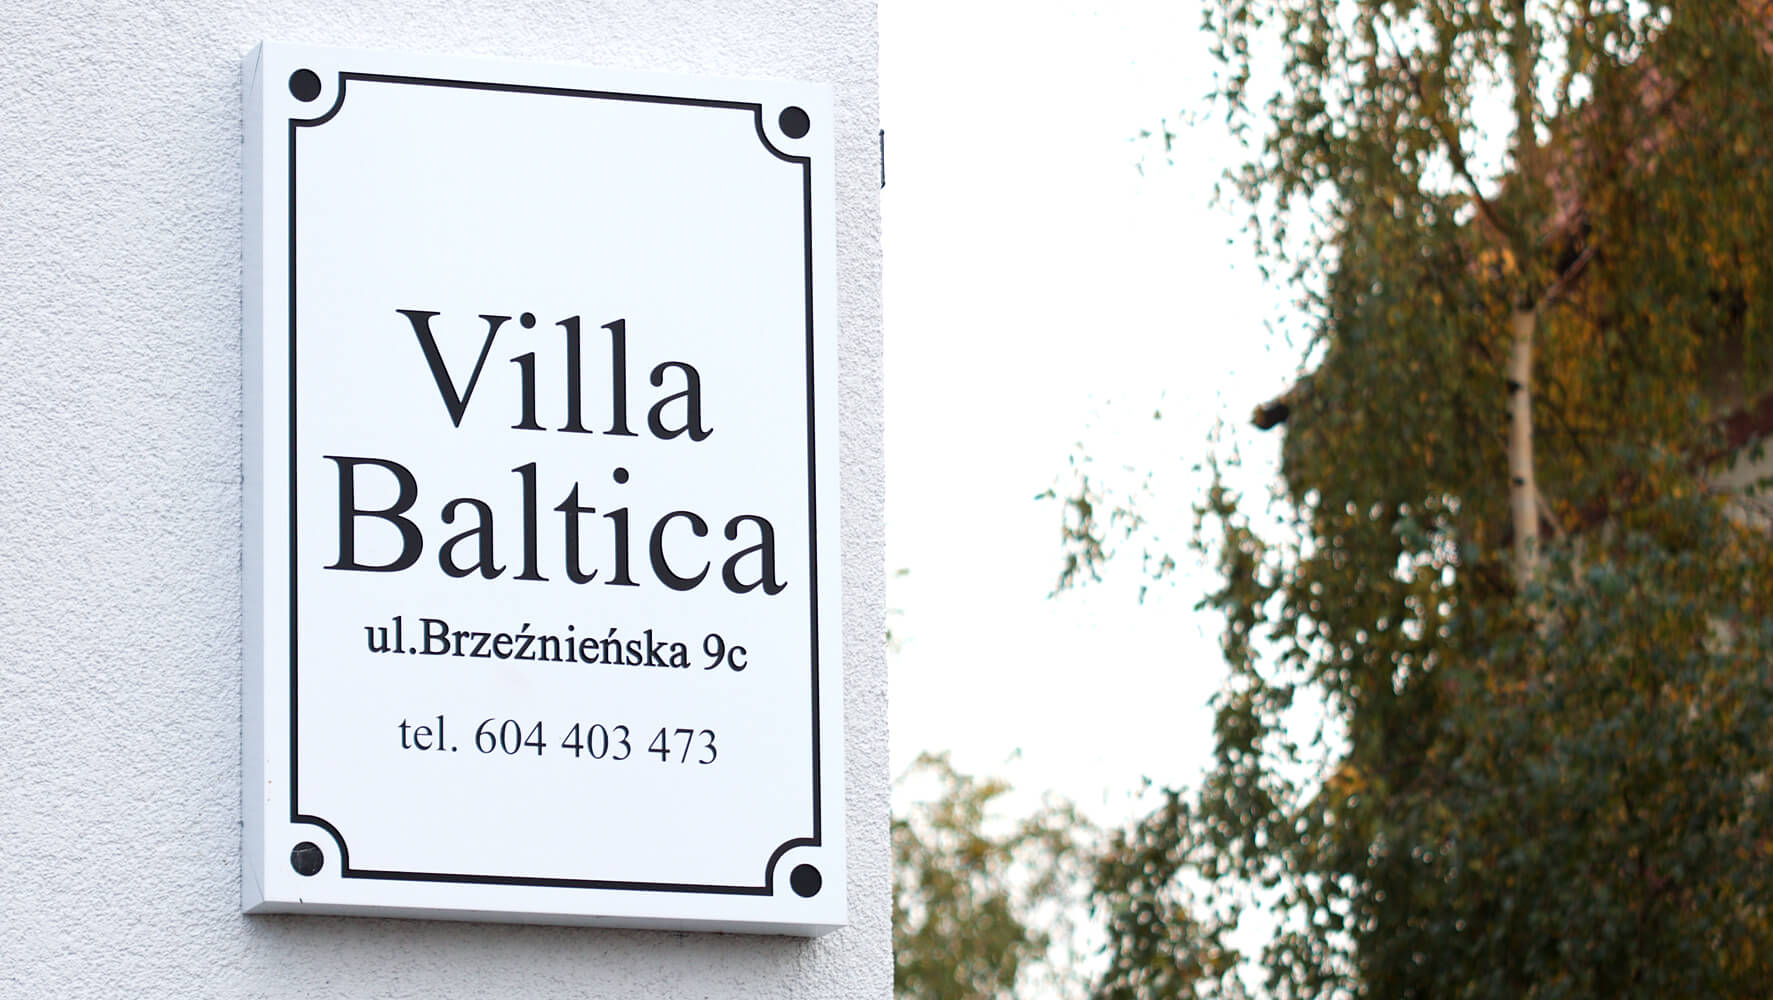 Villa Baltica - Villa Baltica - Firmenschild auf einer Dibondkassette in weiß matt